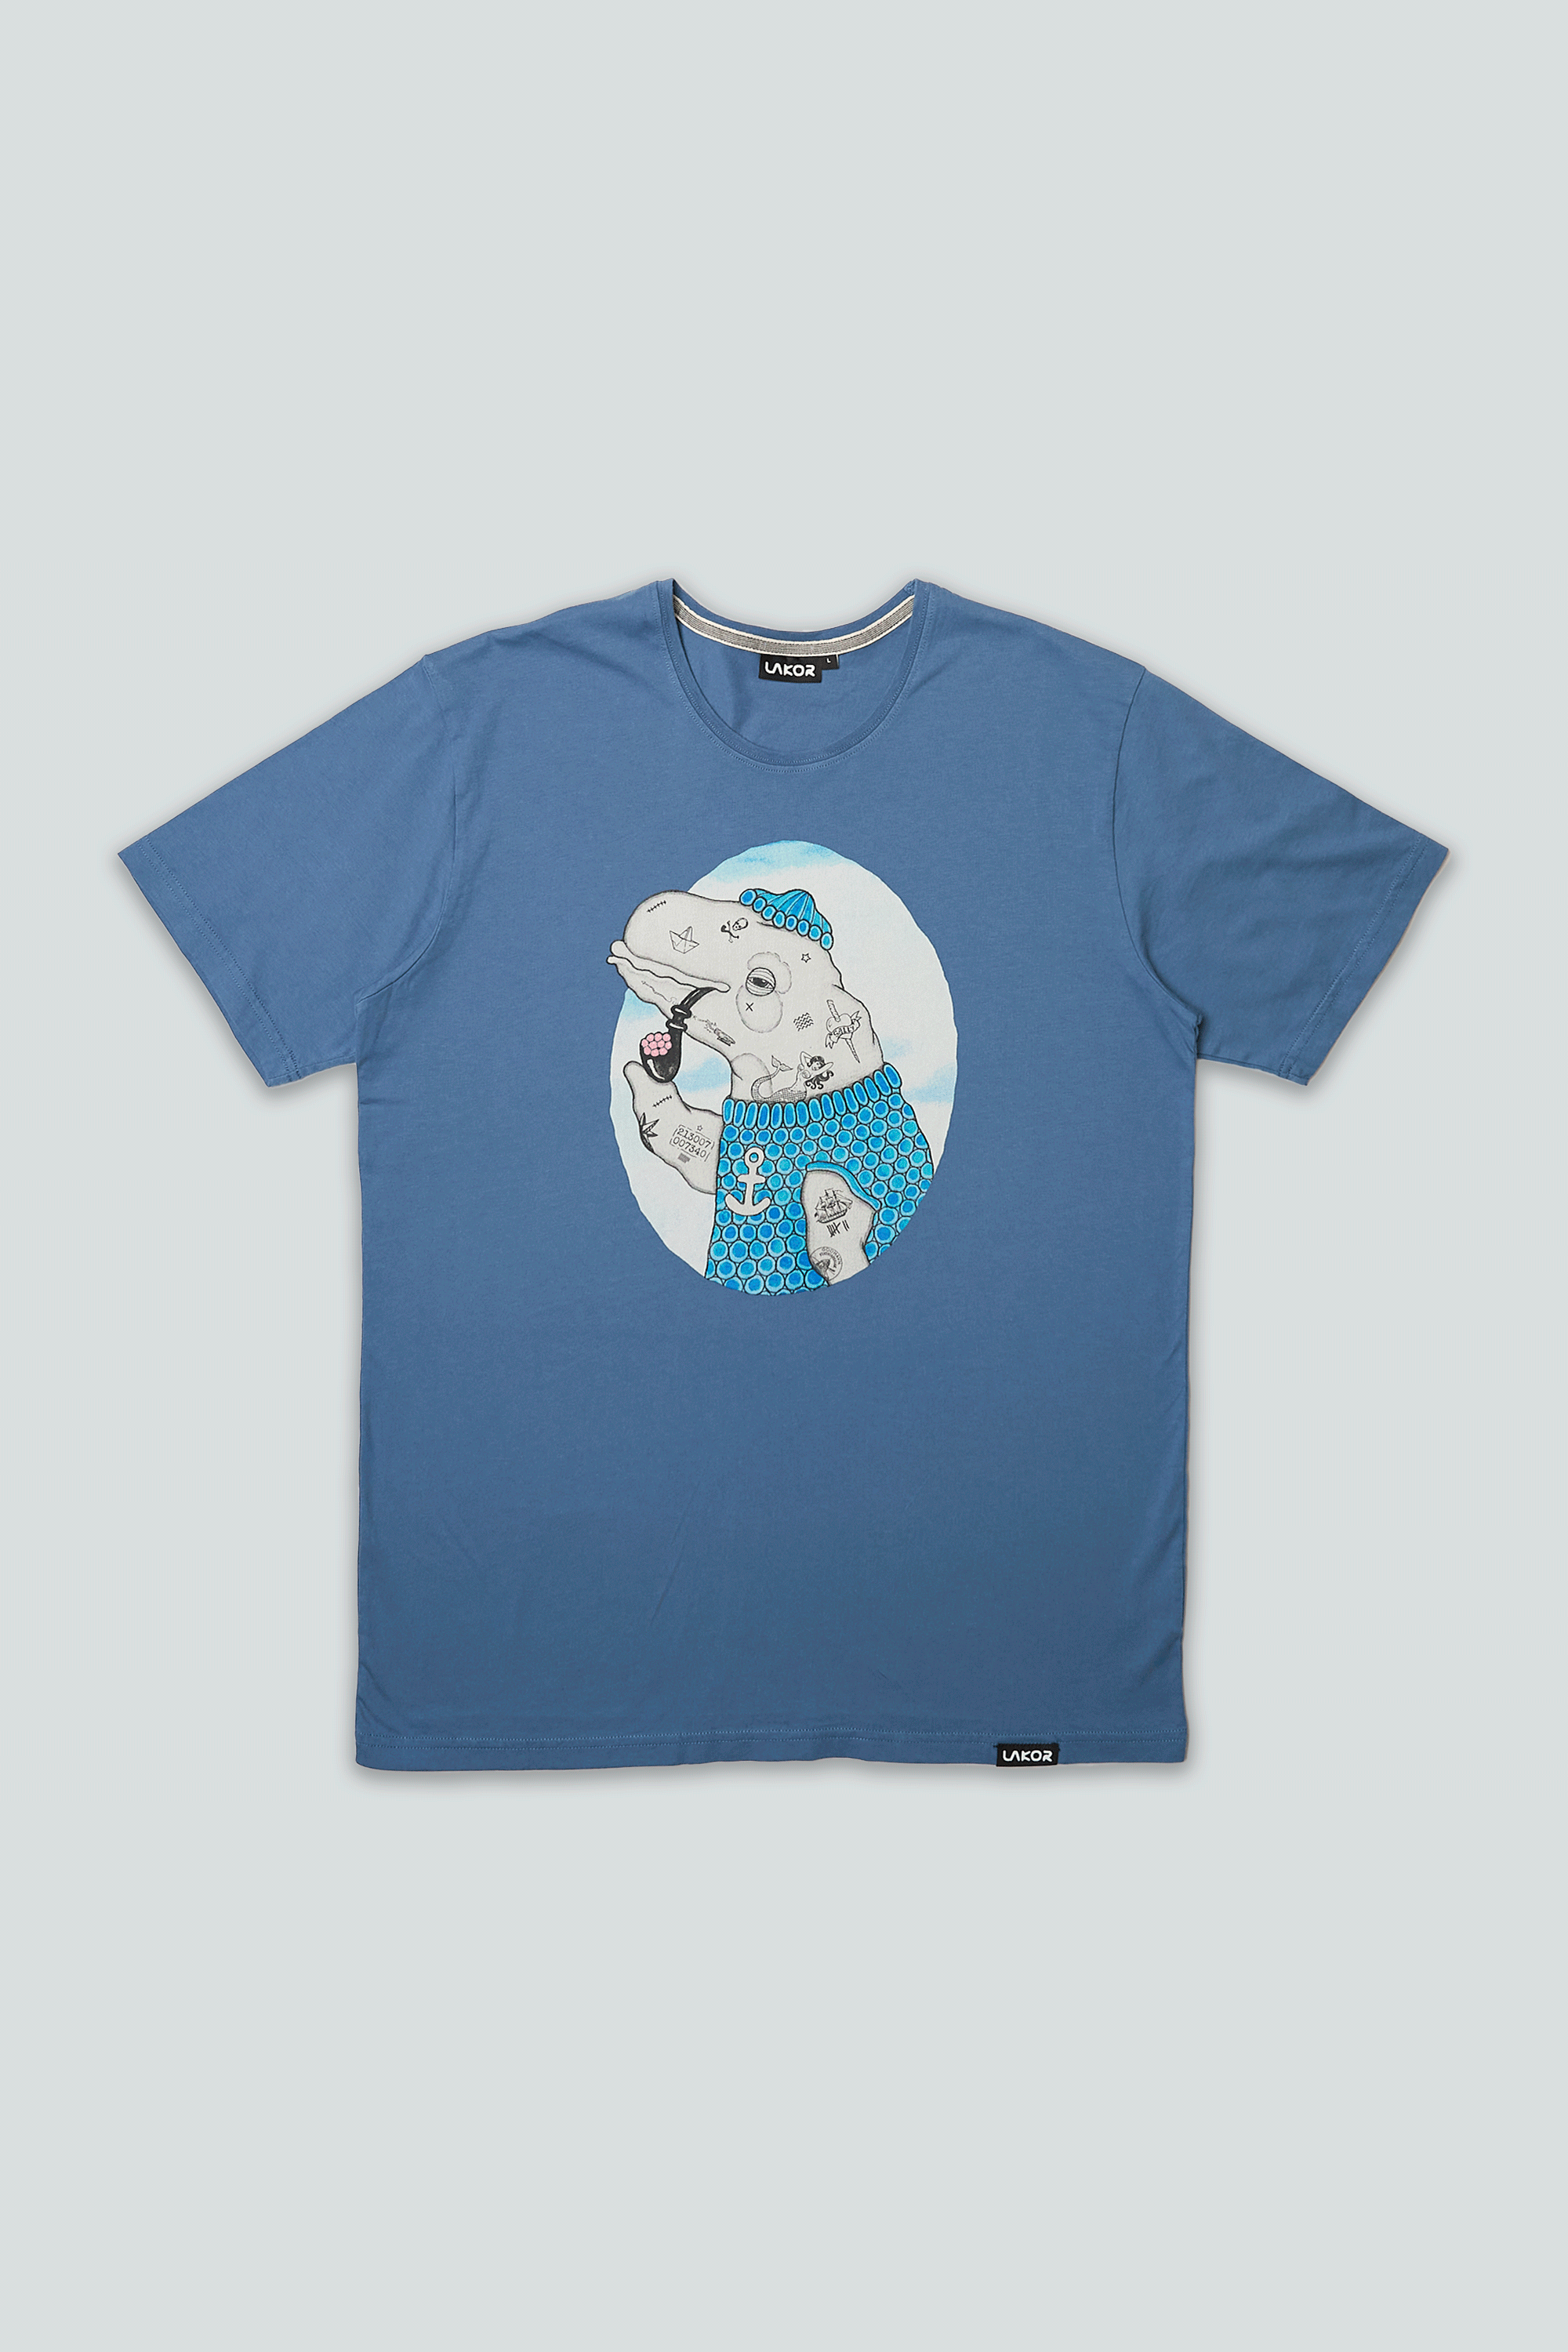 Badass Beluga T-shirt - Bering Sea